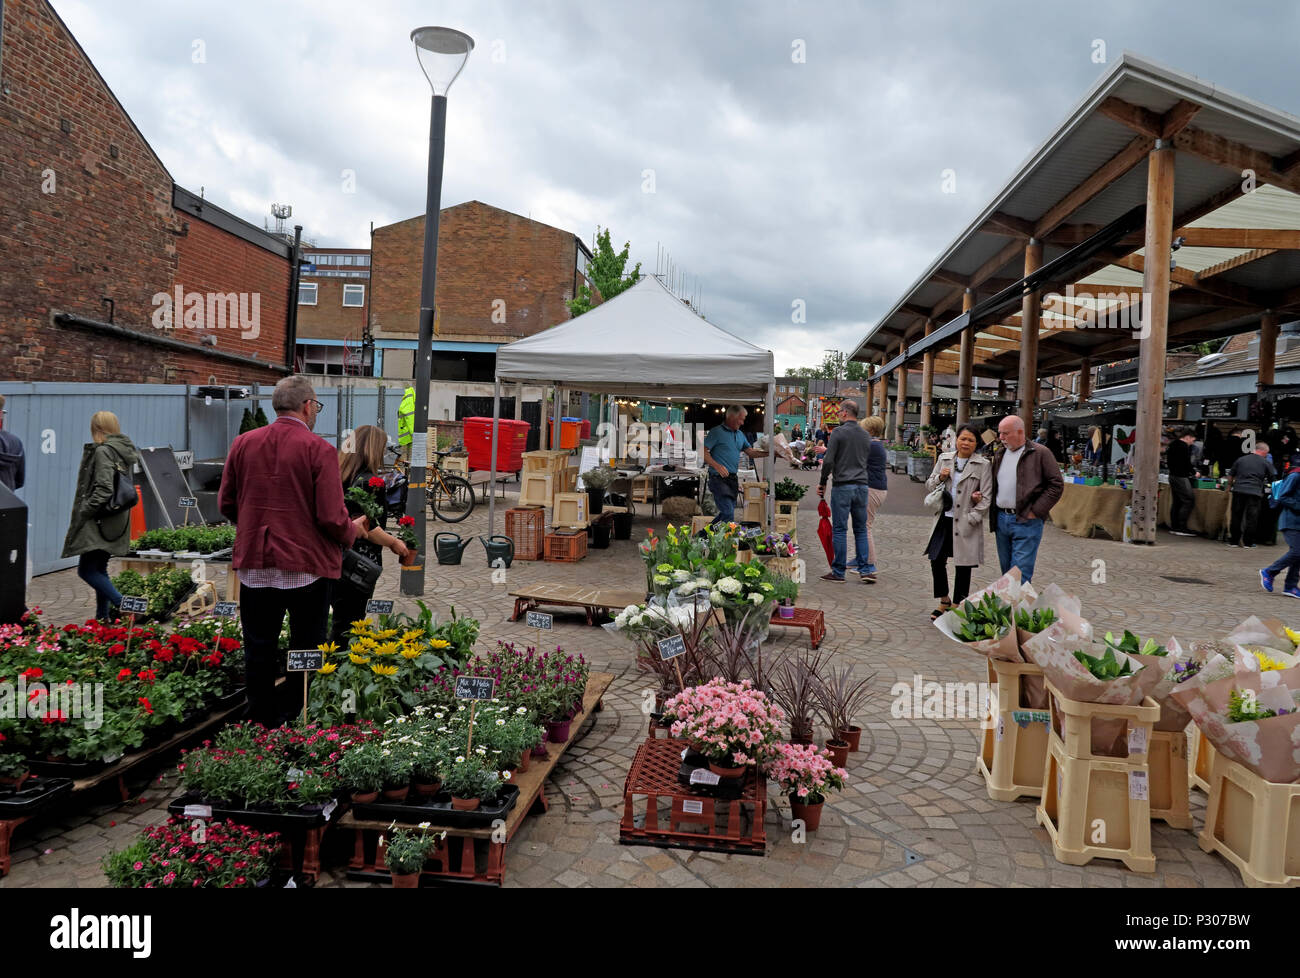 Altrincham réussie de marché de la ville (similaire au Borough Market), Trafford Conseil, le Grand Manchester, au nord ouest de l'Angleterre, Royaume-Uni Banque D'Images